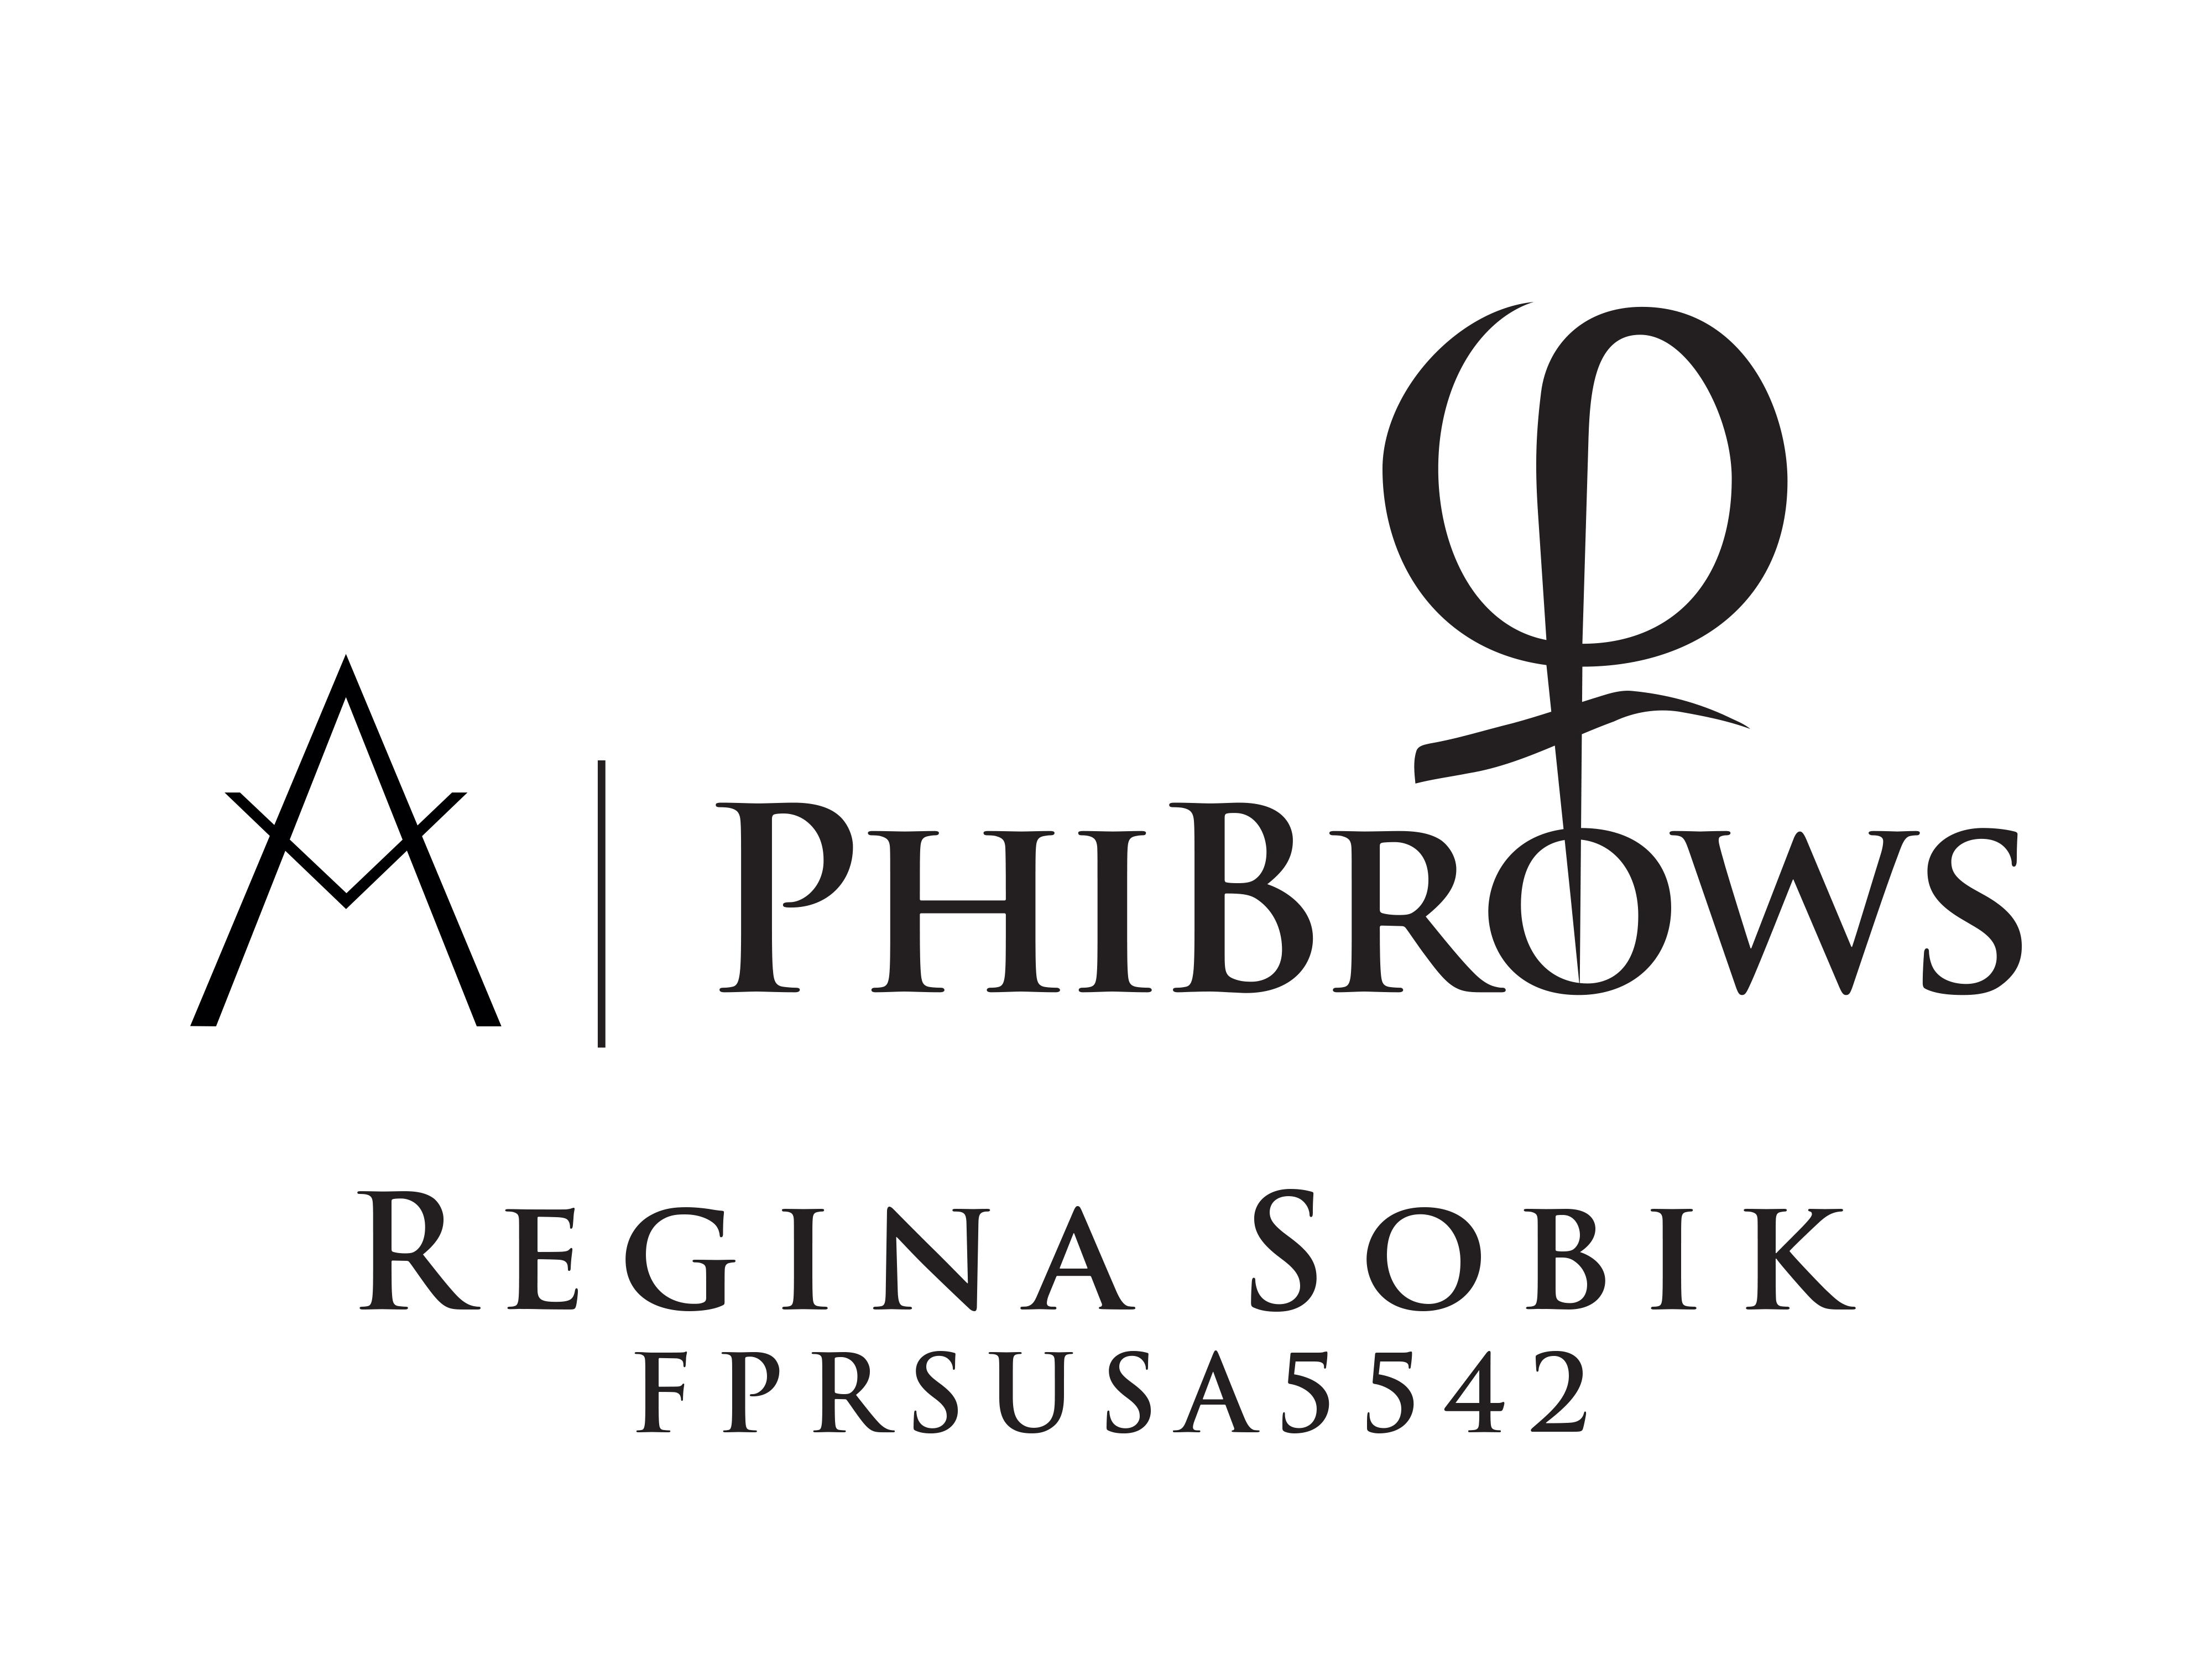 Regina_Phibrows_logo